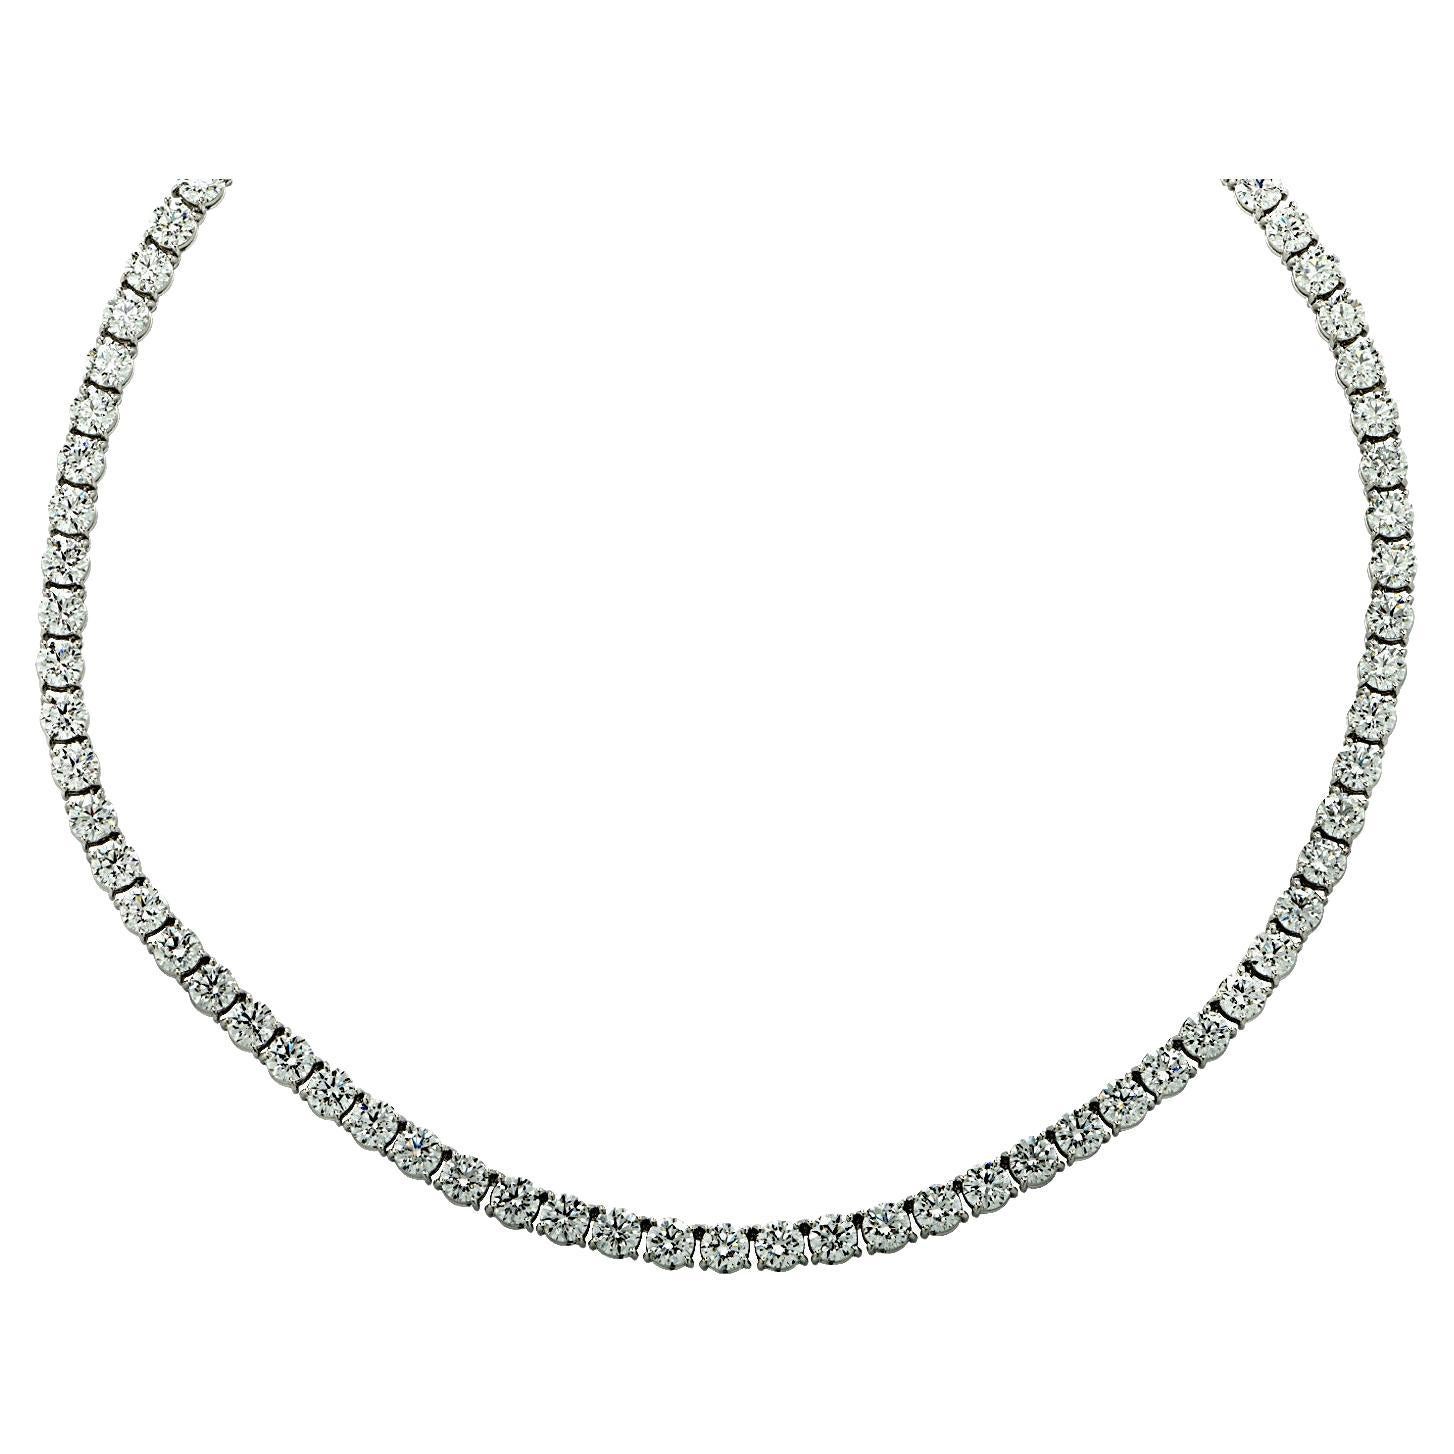 Vivid Diamonds 28 Carat Diamond Straight Line Tennis Necklace